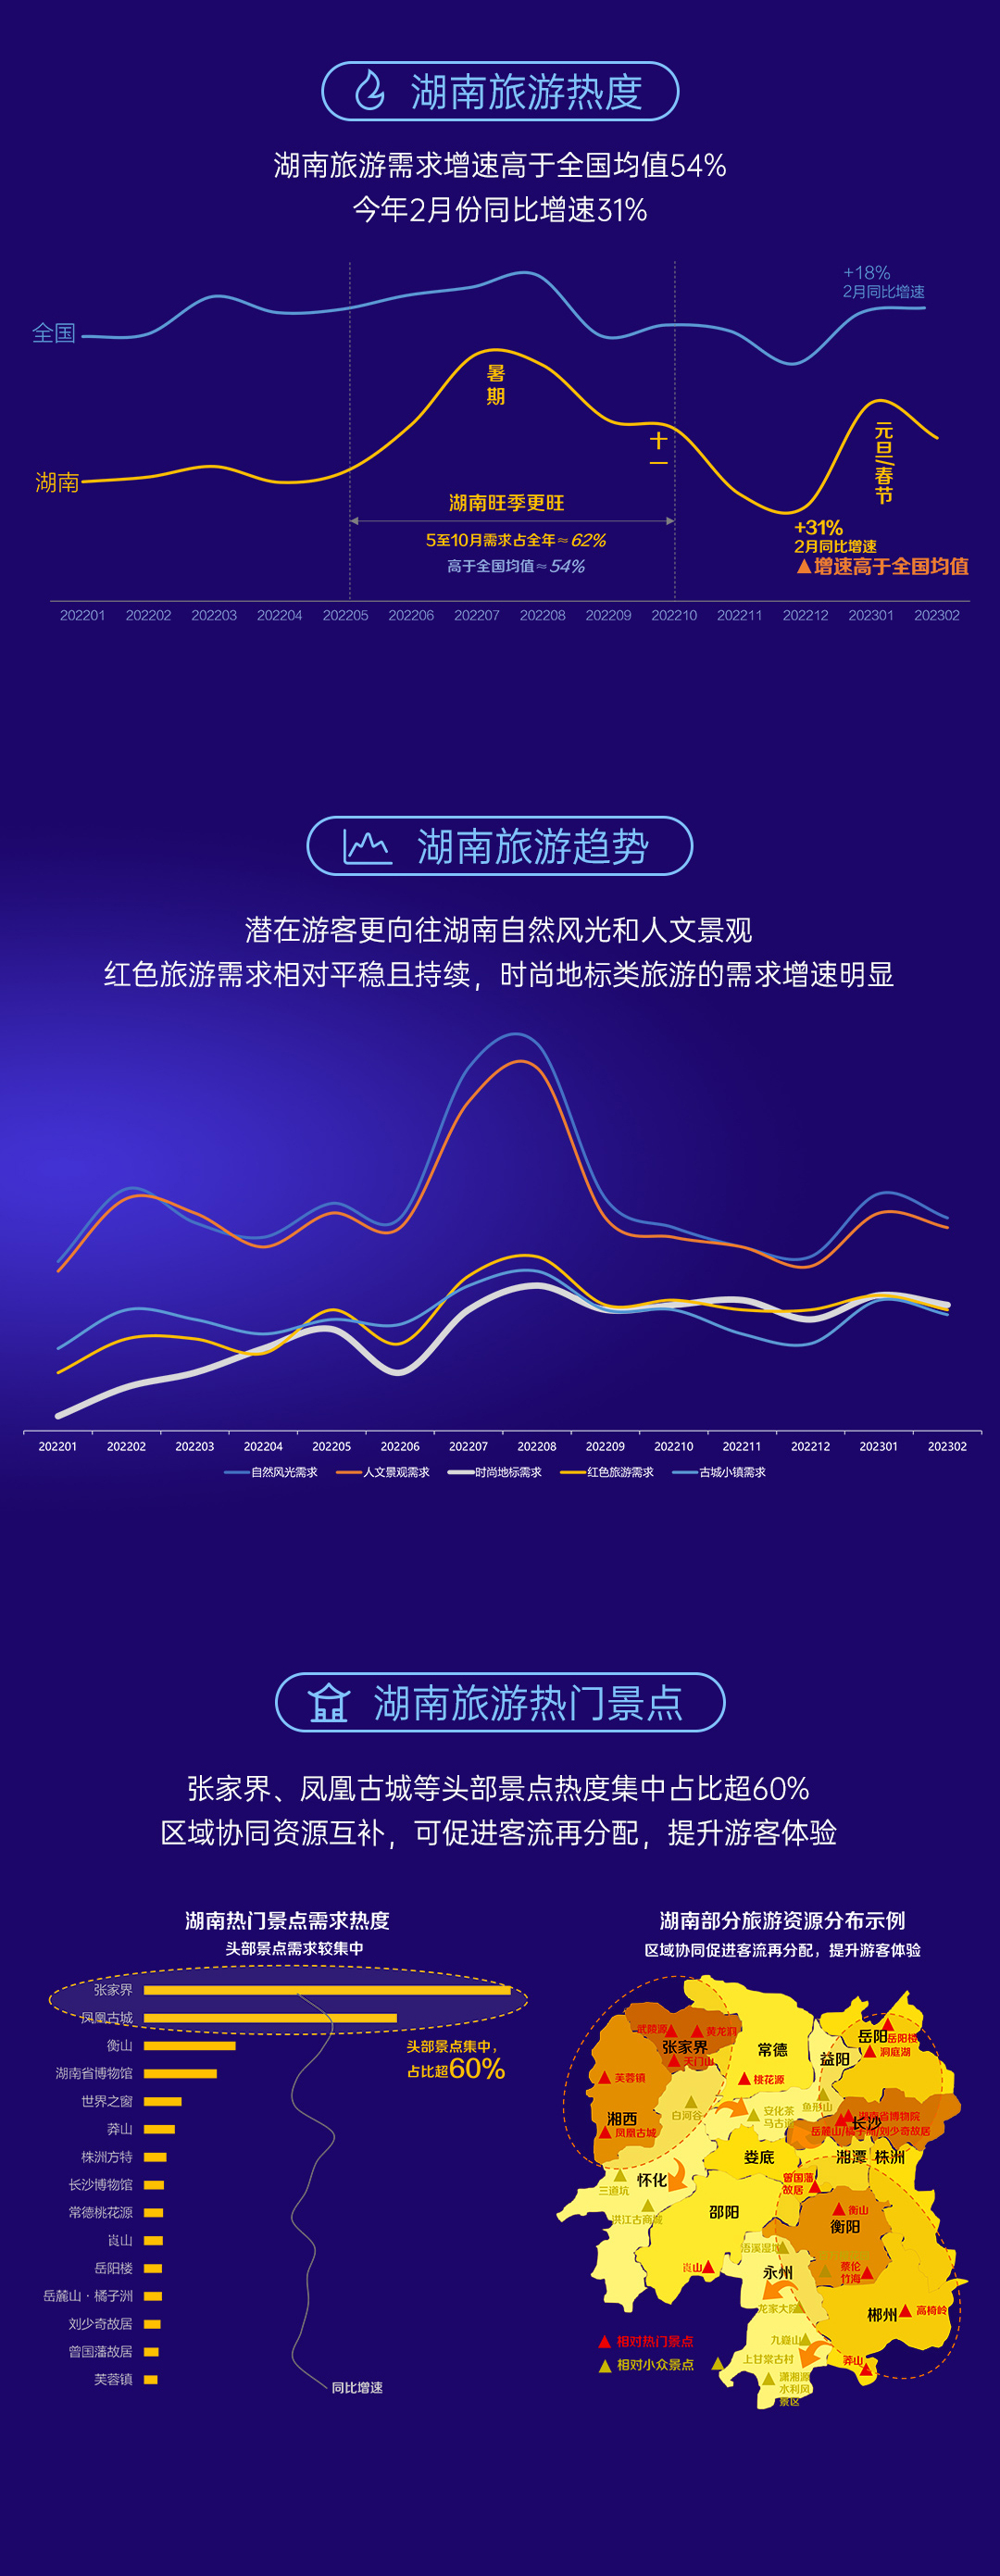 《數說湖南》百度搜索大數據報告發布，網民都在關注湖南哪些領域？